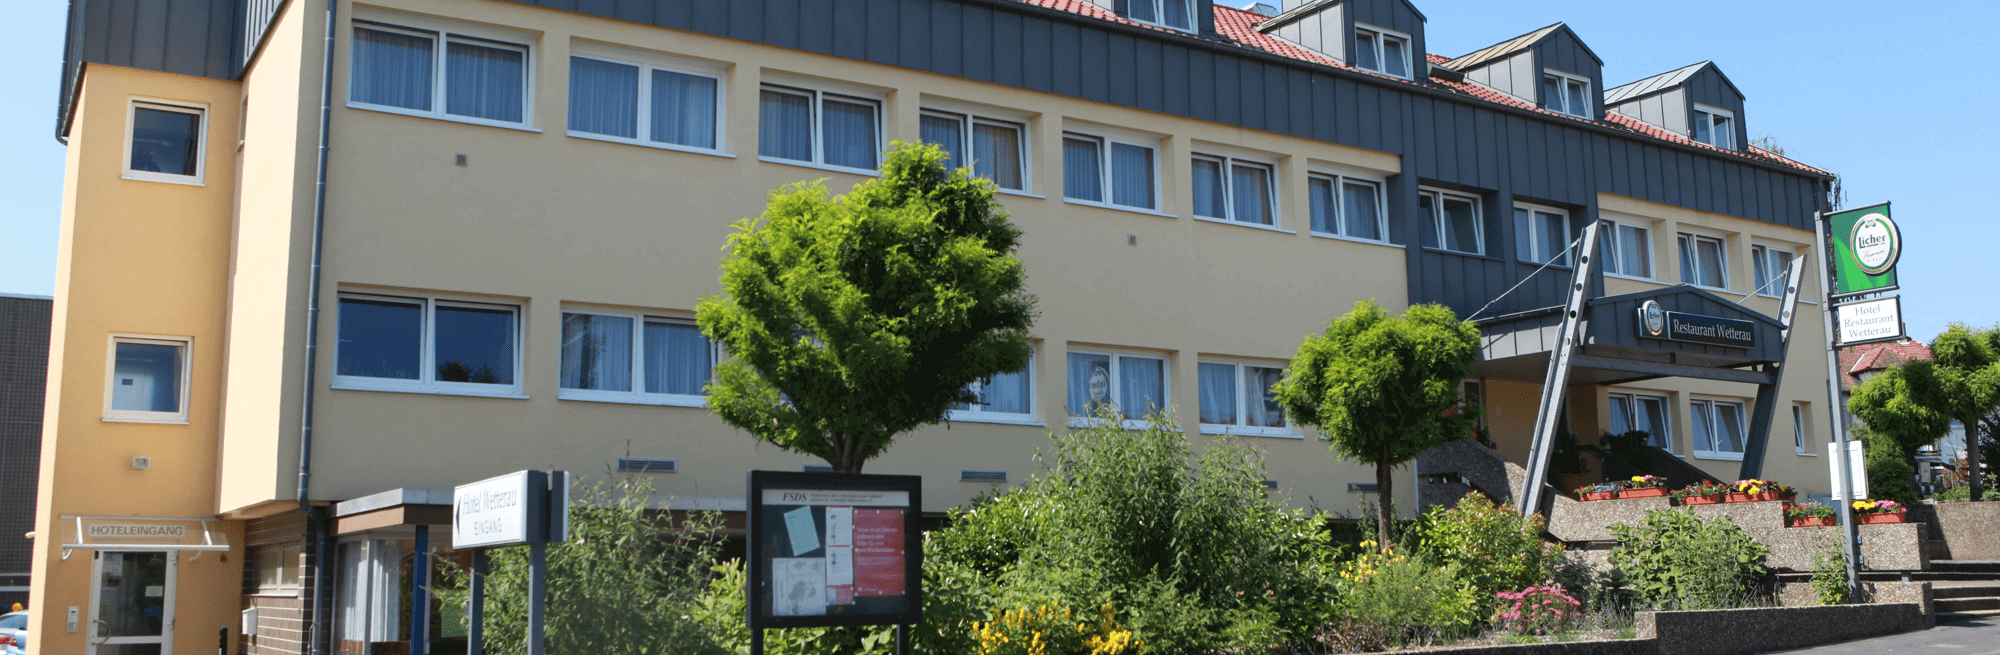 Hotel & Restaurant Wetterau in Wölfersheim bei Ortenberg